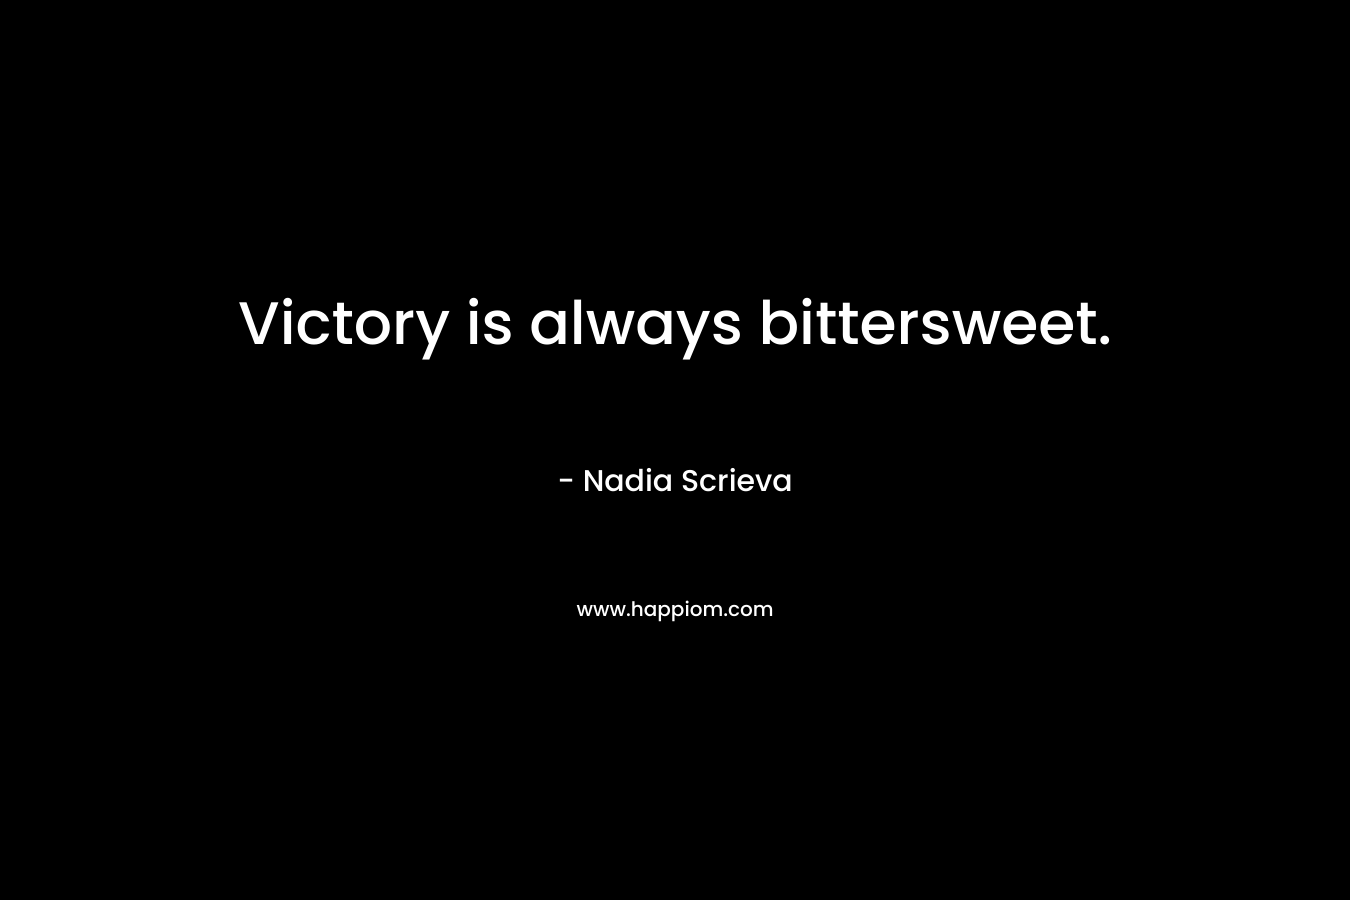 Victory is always bittersweet.